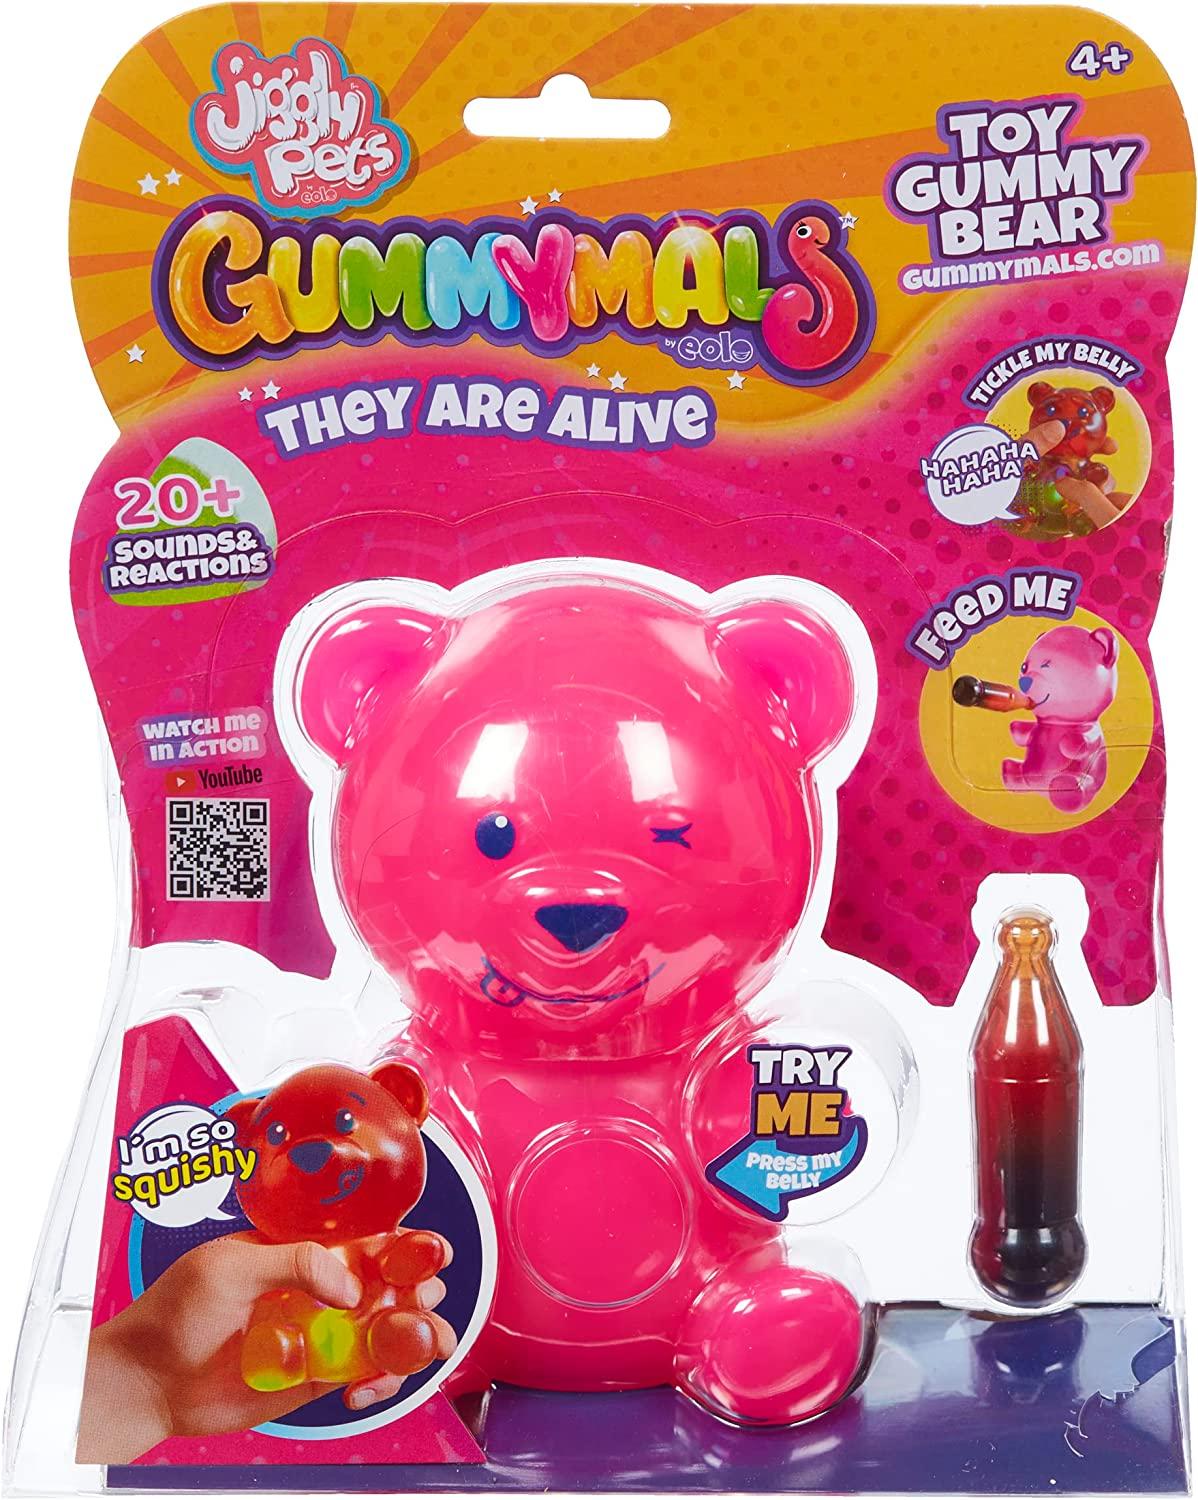 Jiggly Pets Gummymals PINK Interactive Super Squishy Gummy Bear